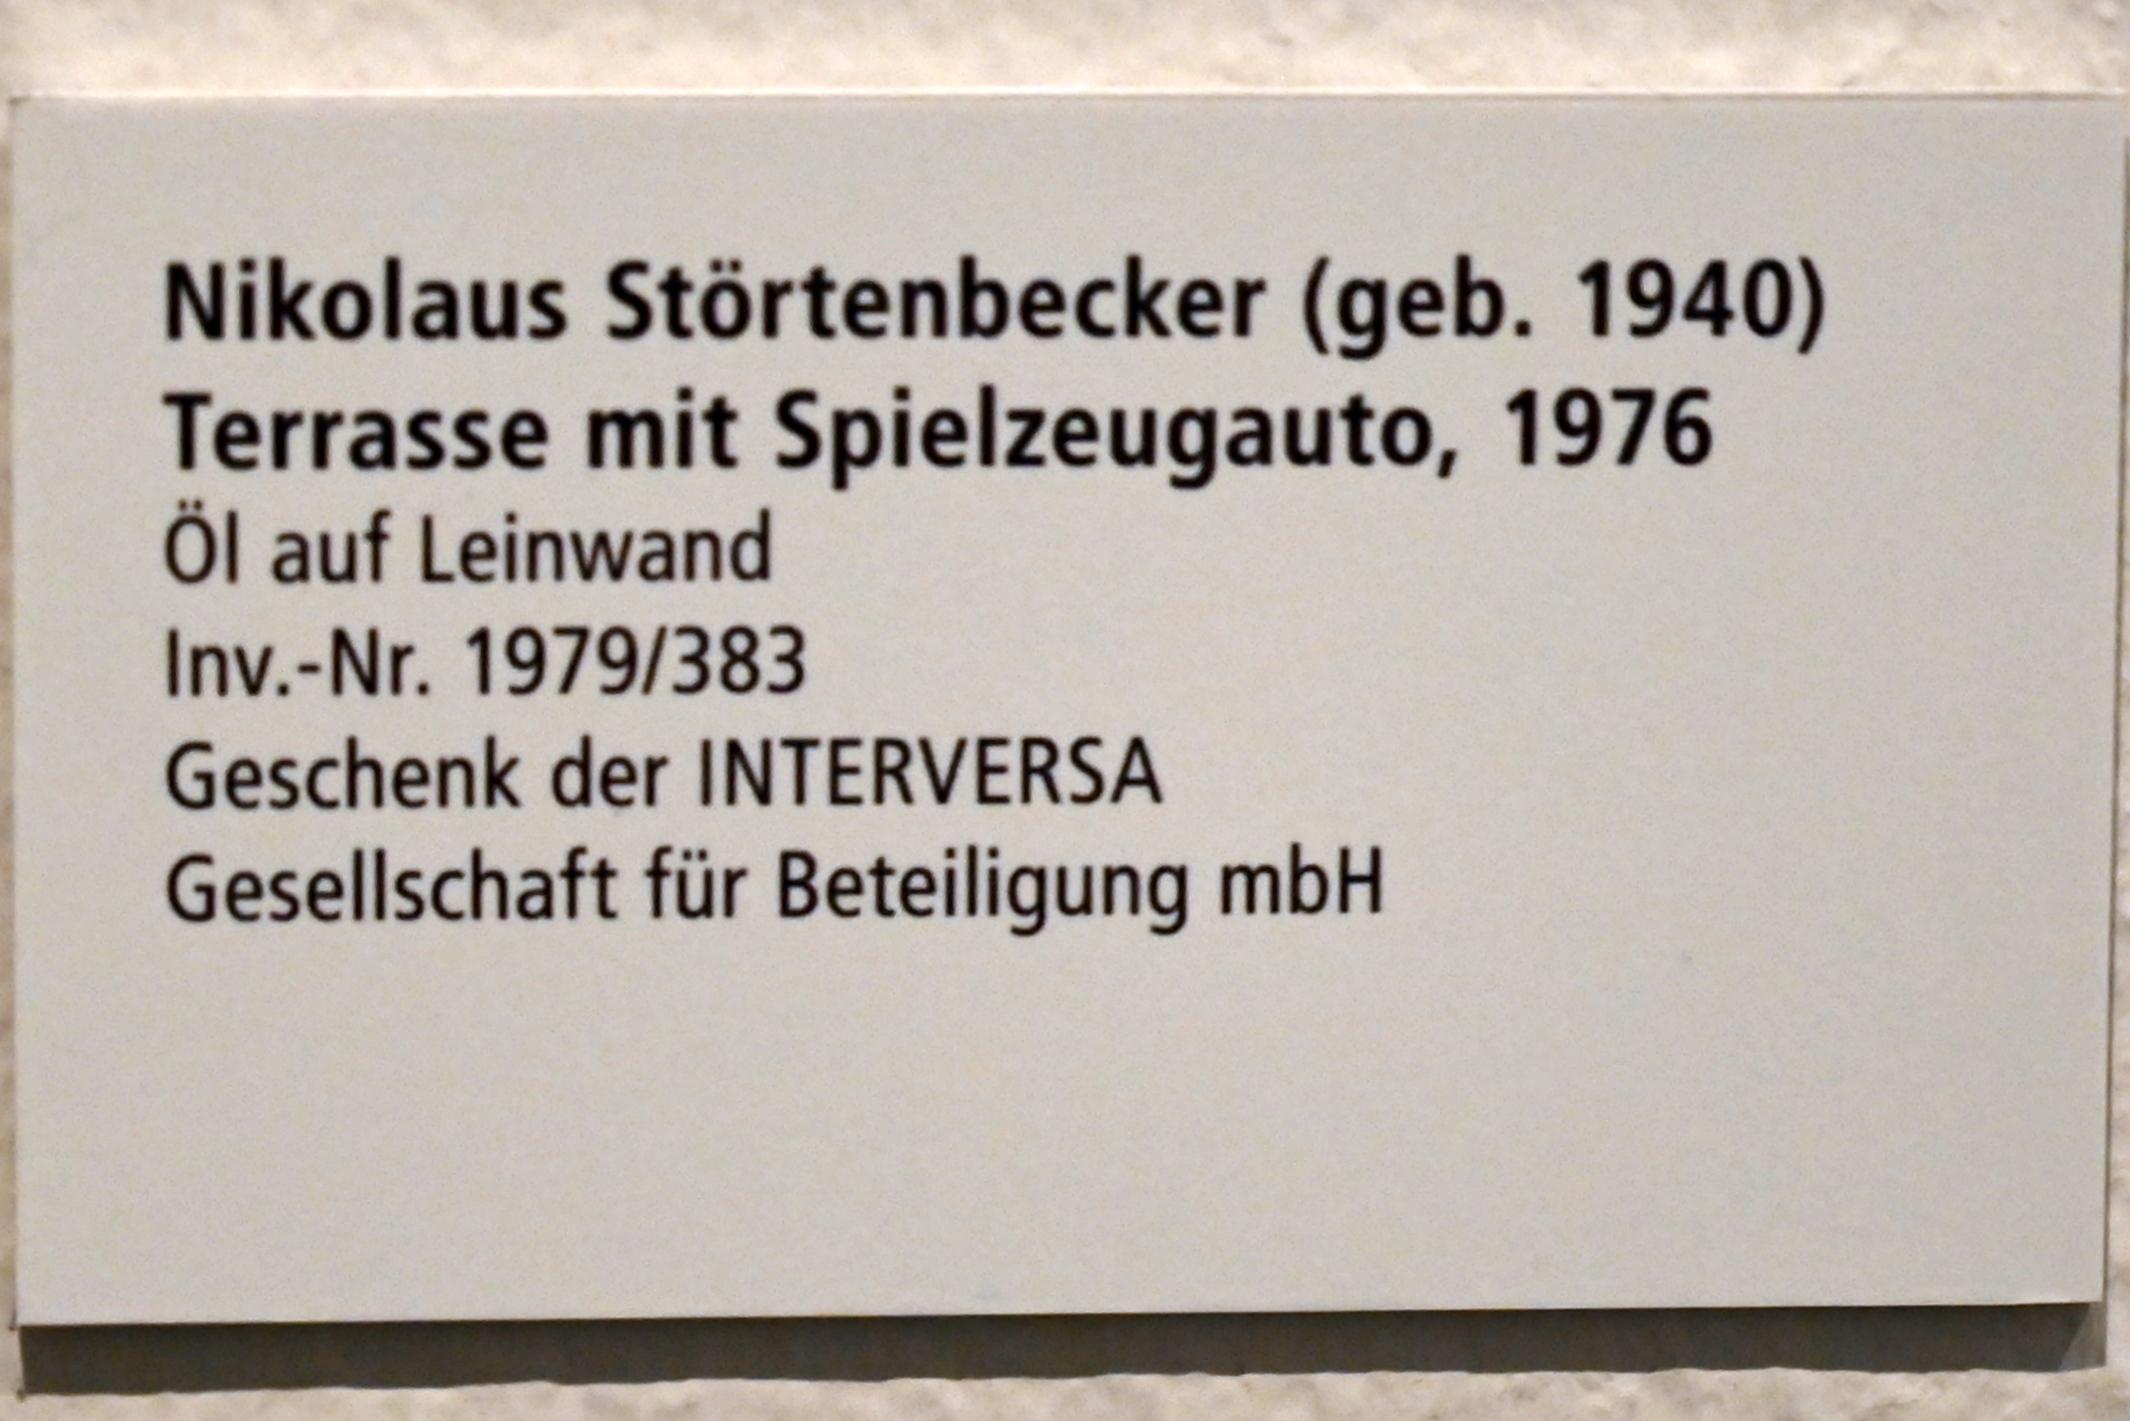 Nikolaus Störtenbecker (1976–1991), Terrasse mit Spielzeugauto, Schleswig, Landesmuseum für Kunst und Kulturgeschichte, Galerie der Klassischen Moderne, 1976, Bild 2/2